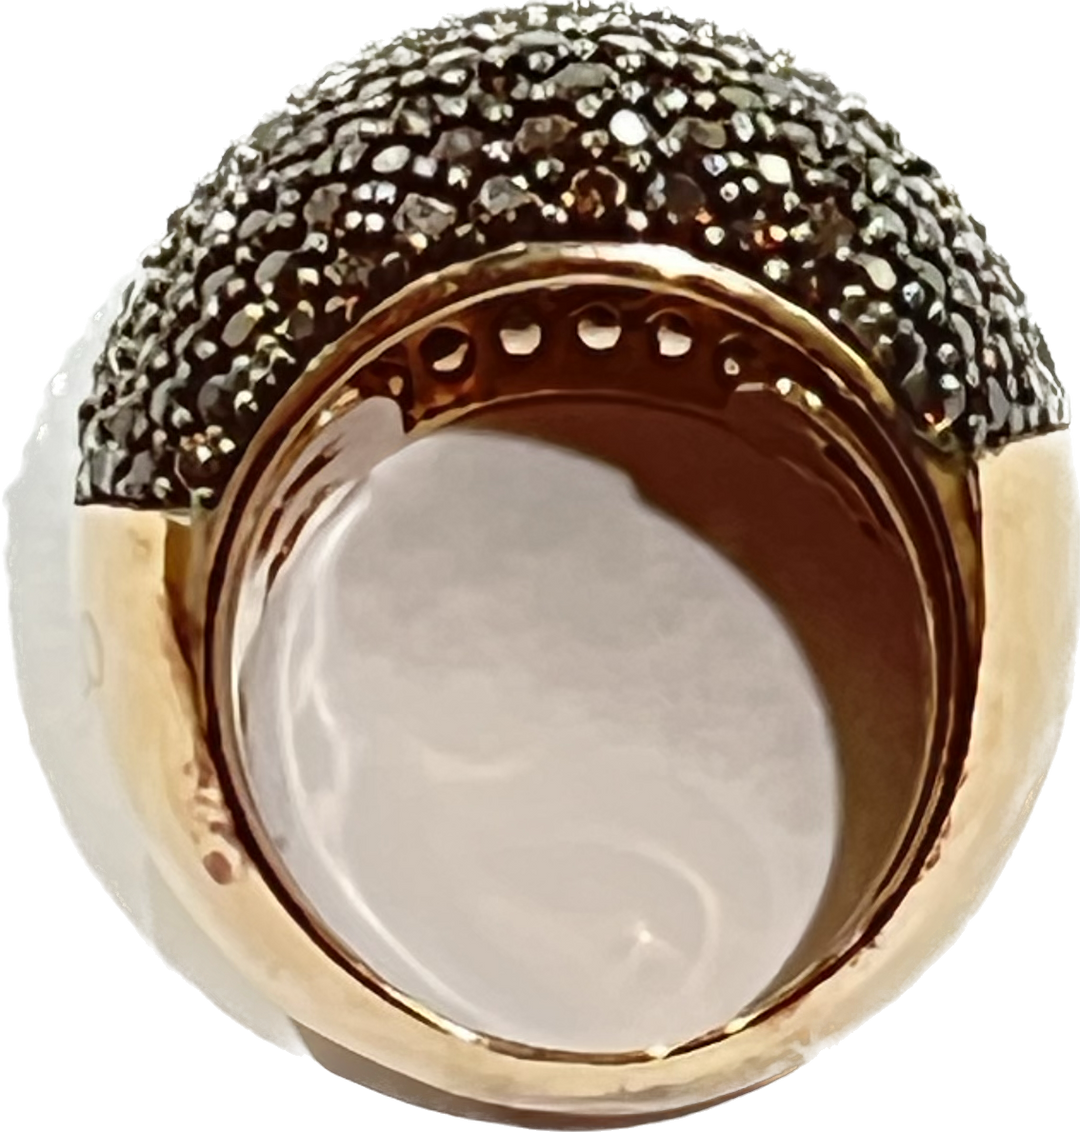 Sidalo Pavryte Brown Pierścień Srebrny 925 Wykończenie Pvd Gold Rosa Cubic Zirconia M4425-BW